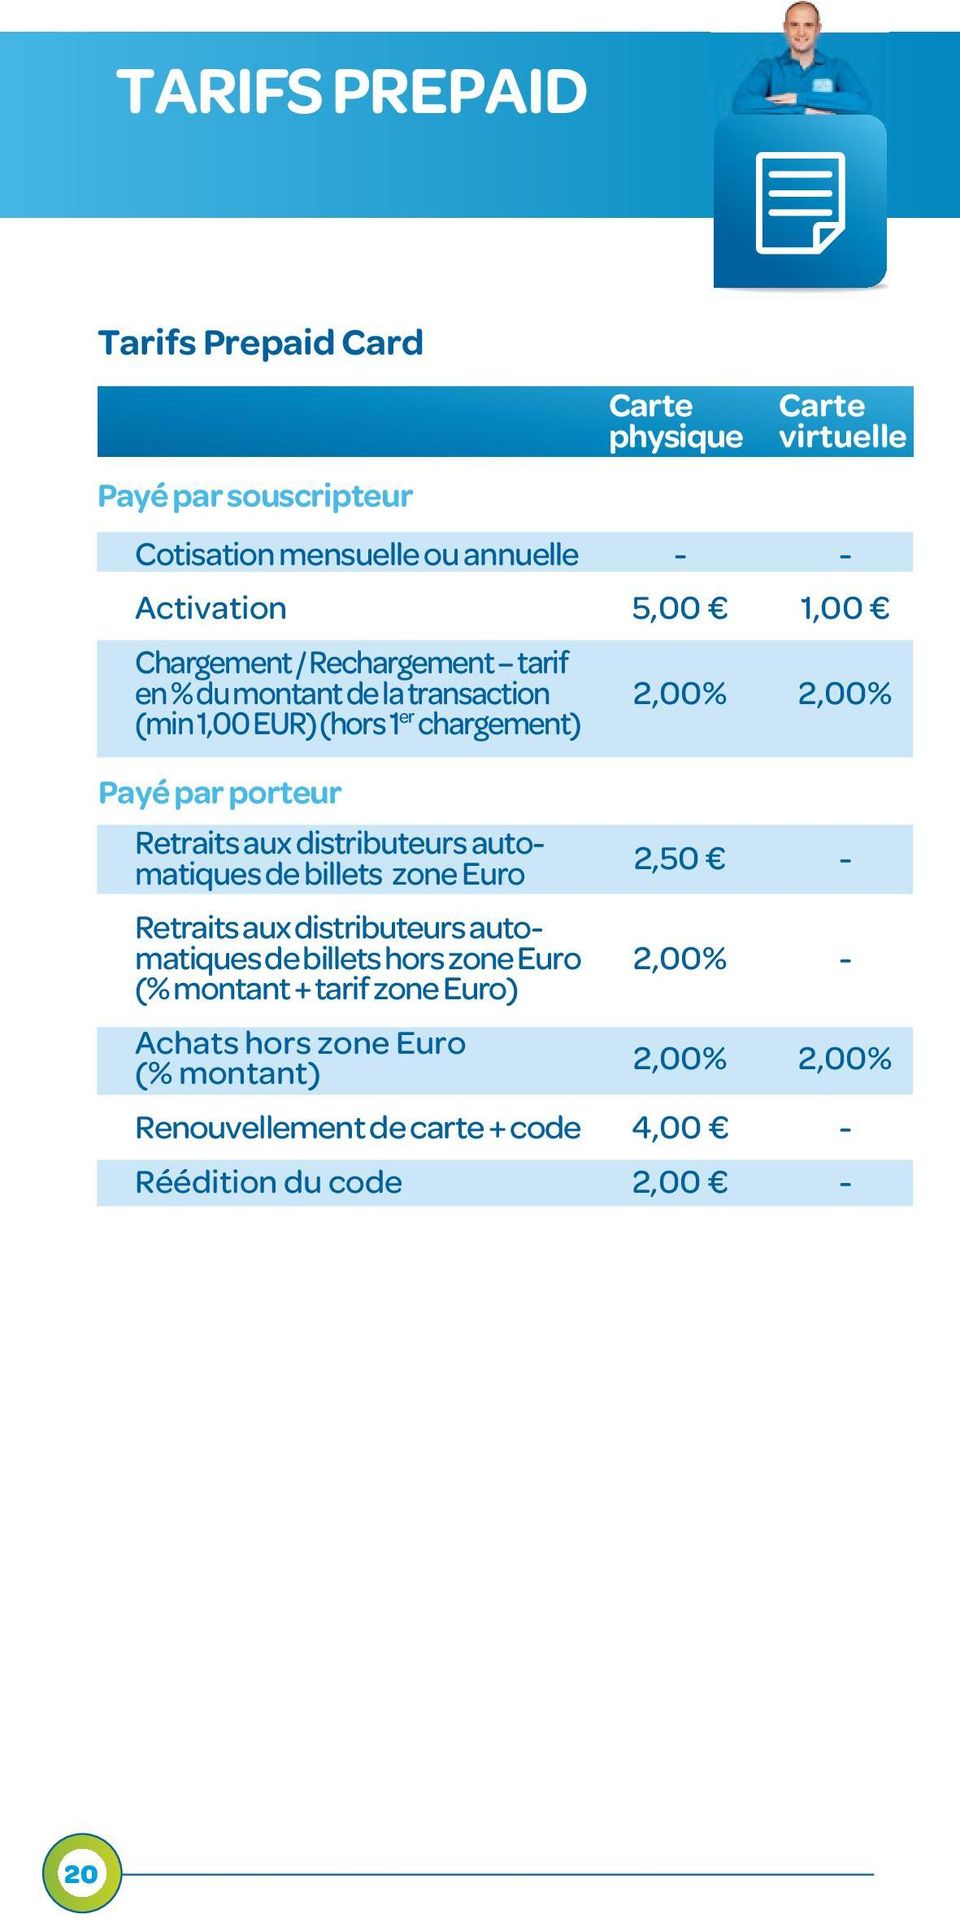 aux distributeurs automatiques de billets zone Euro Retraits aux distributeurs automatiques de billets hors zone Euro (% montant + tarif